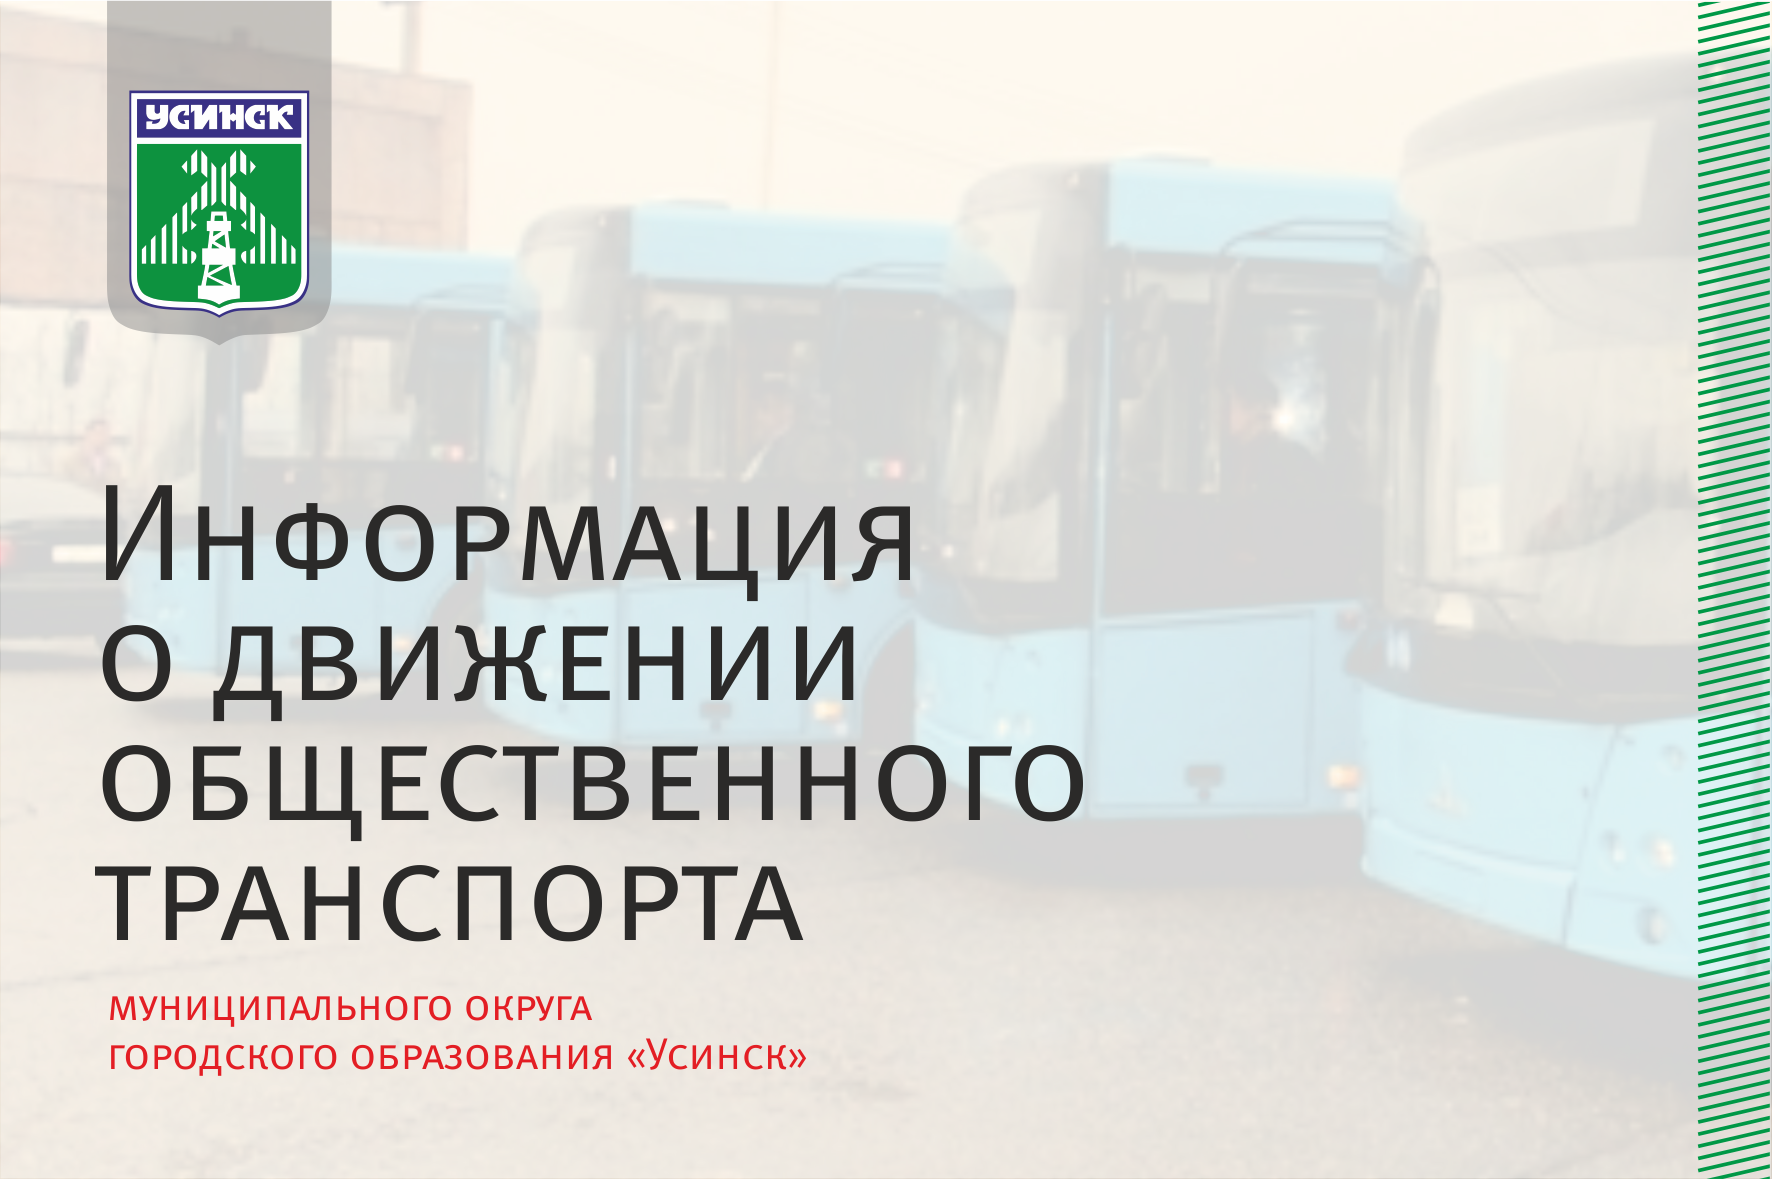 Организован дополнительный автобусный рейс № 101+105 «Усинск-Парма-Колва».